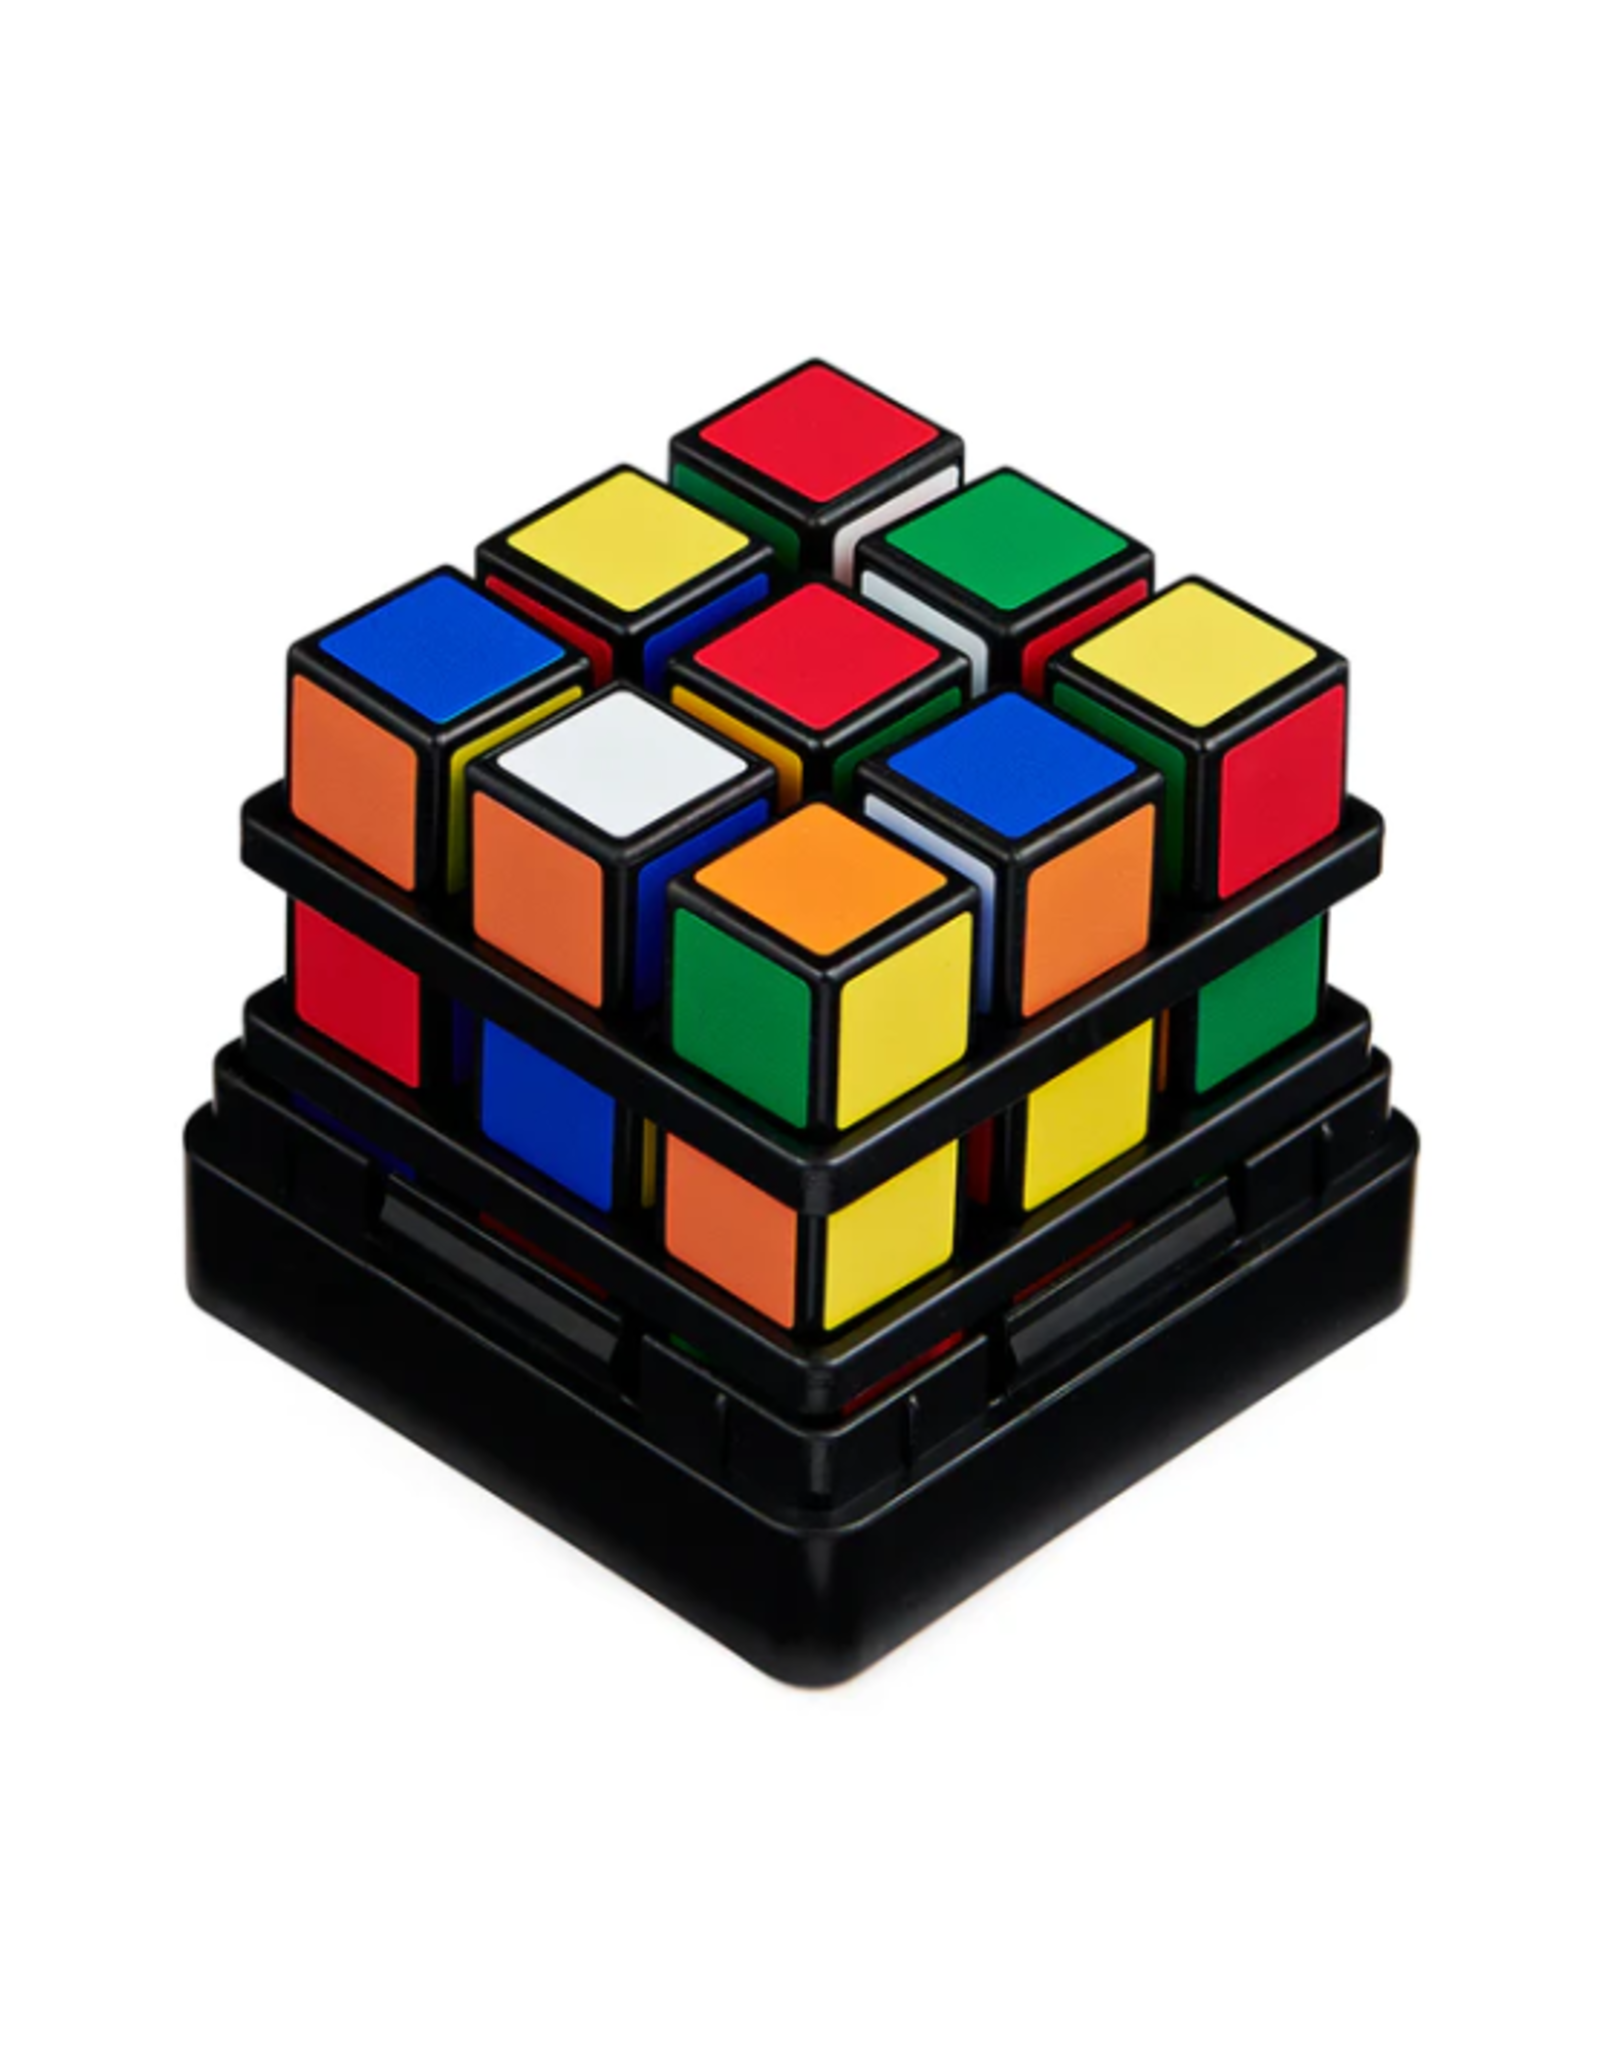 Spin Master Spin Master - Rubik's Roll